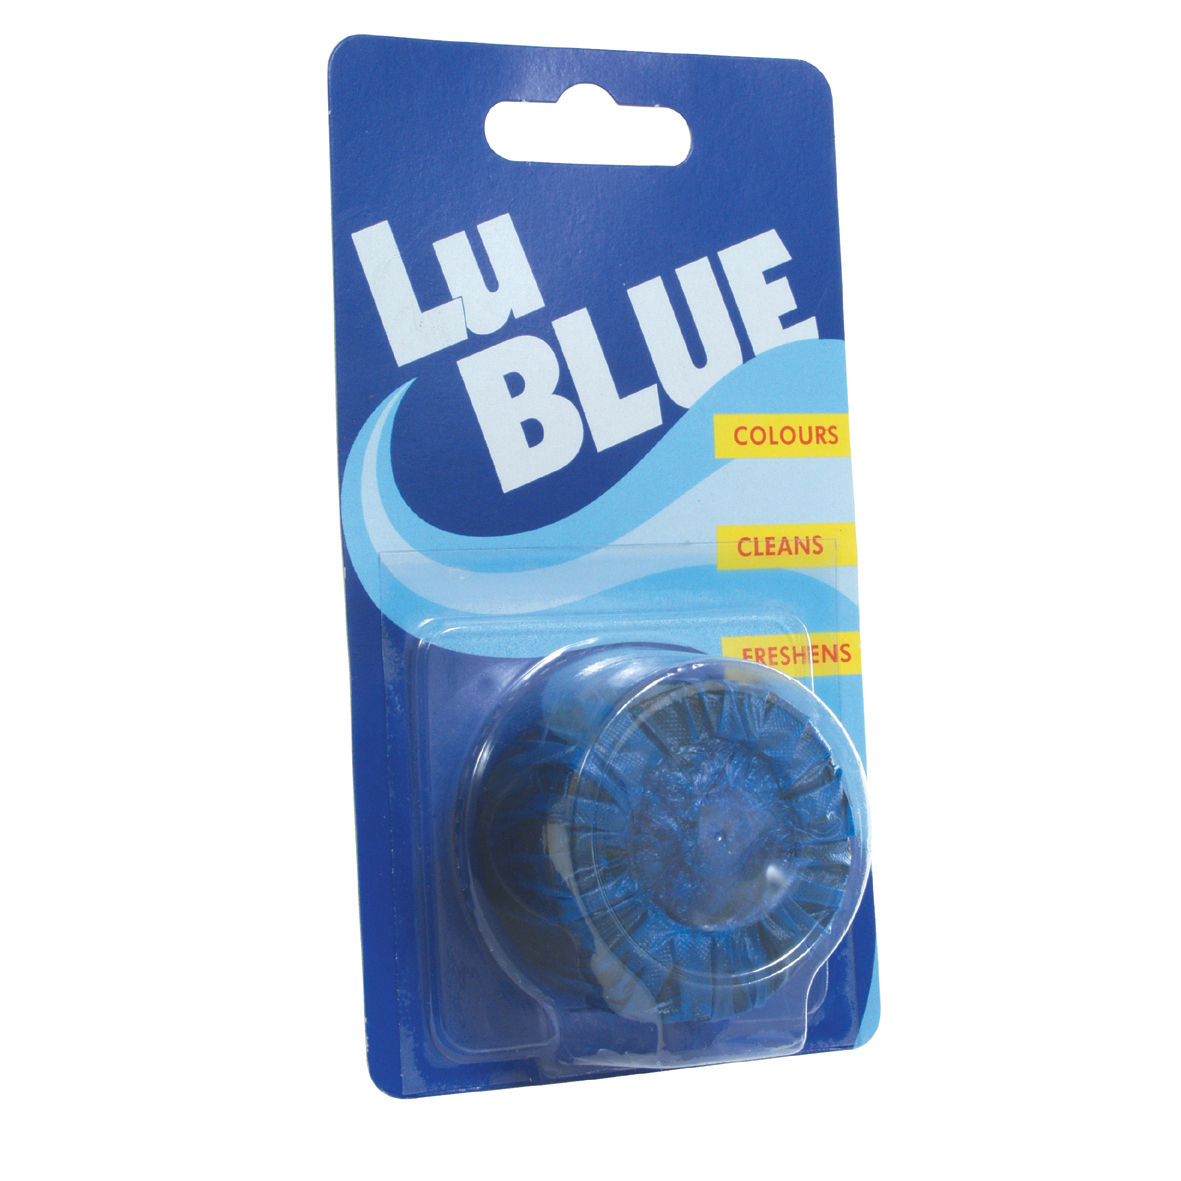 Lu-Blue-4x38g-Blister-Pack